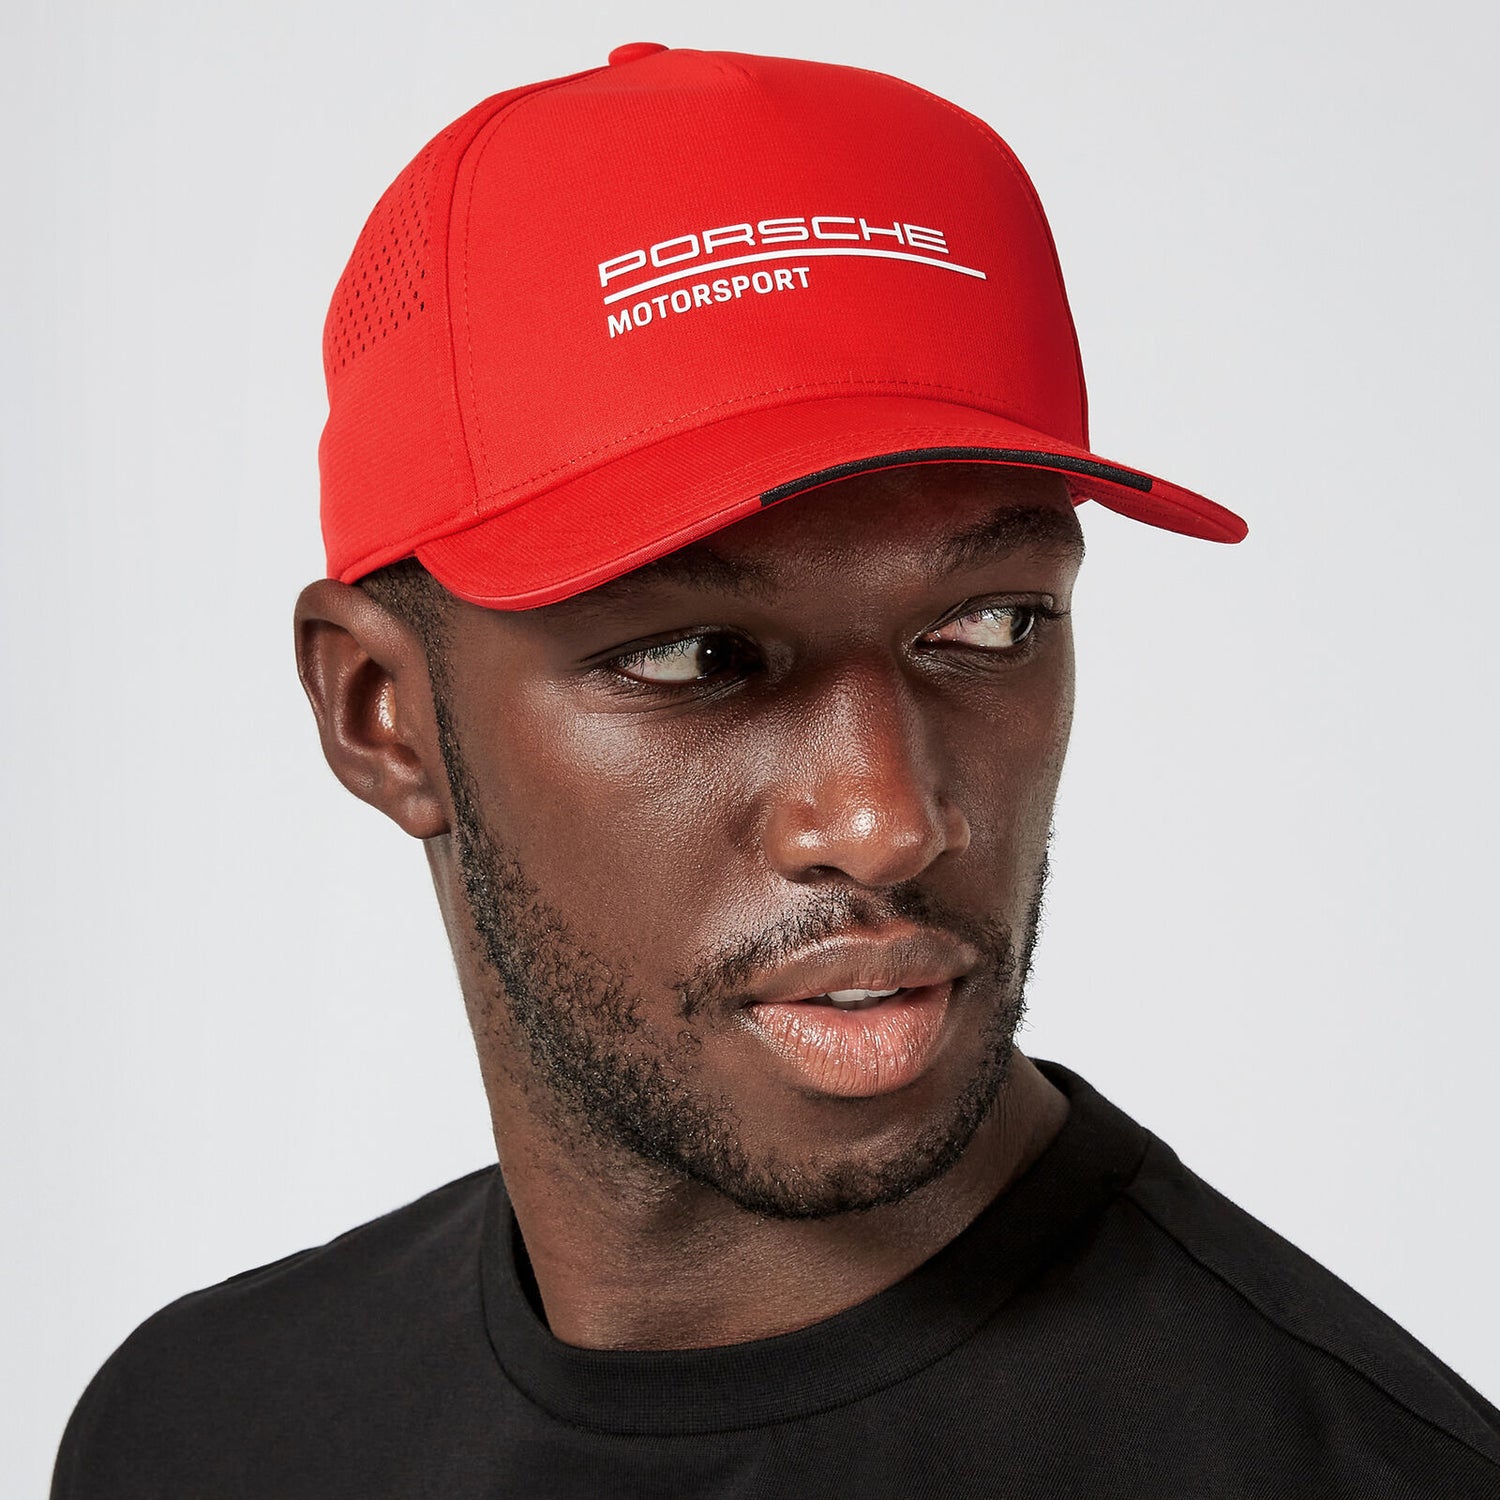 man wearing red Porsche baseball cap